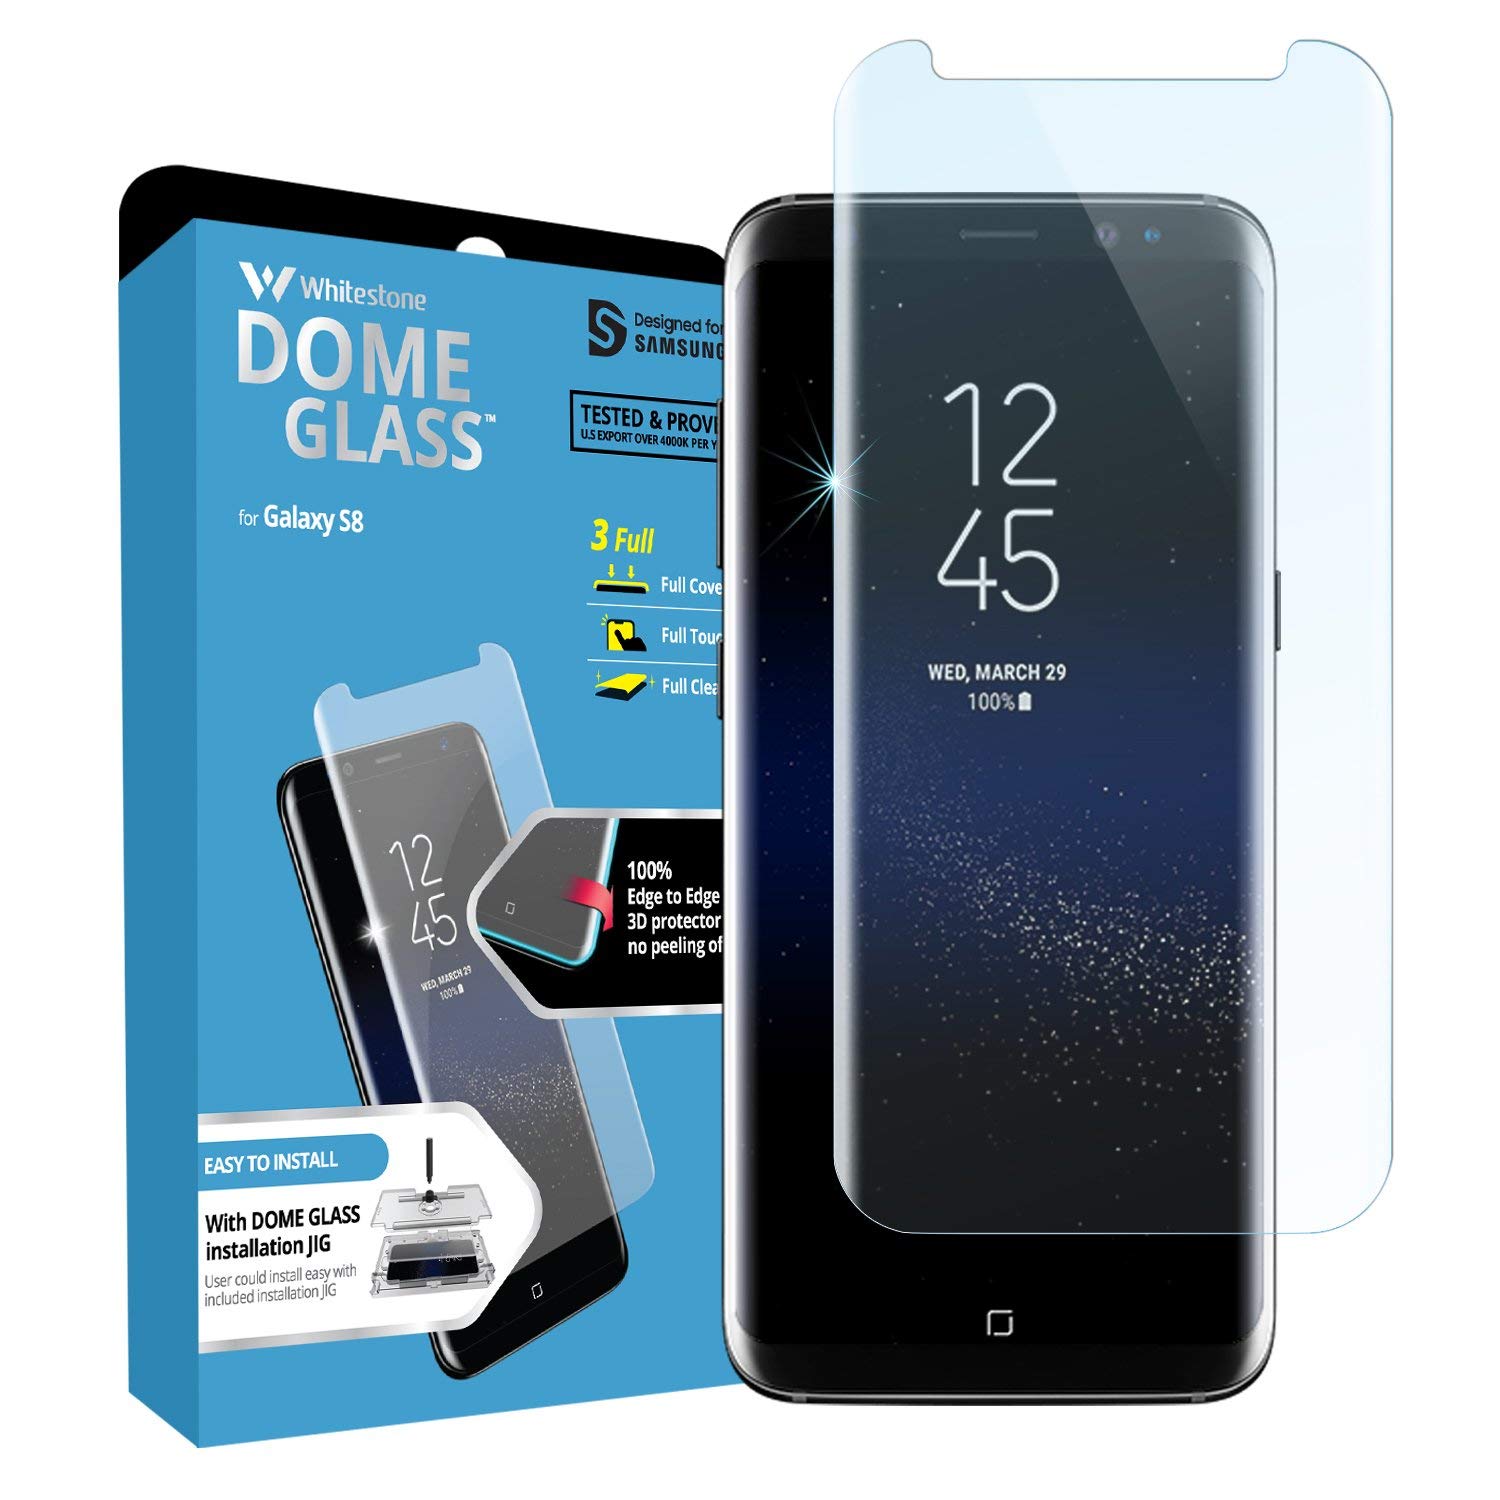 Whitestone Dome Glass Galaxy S8